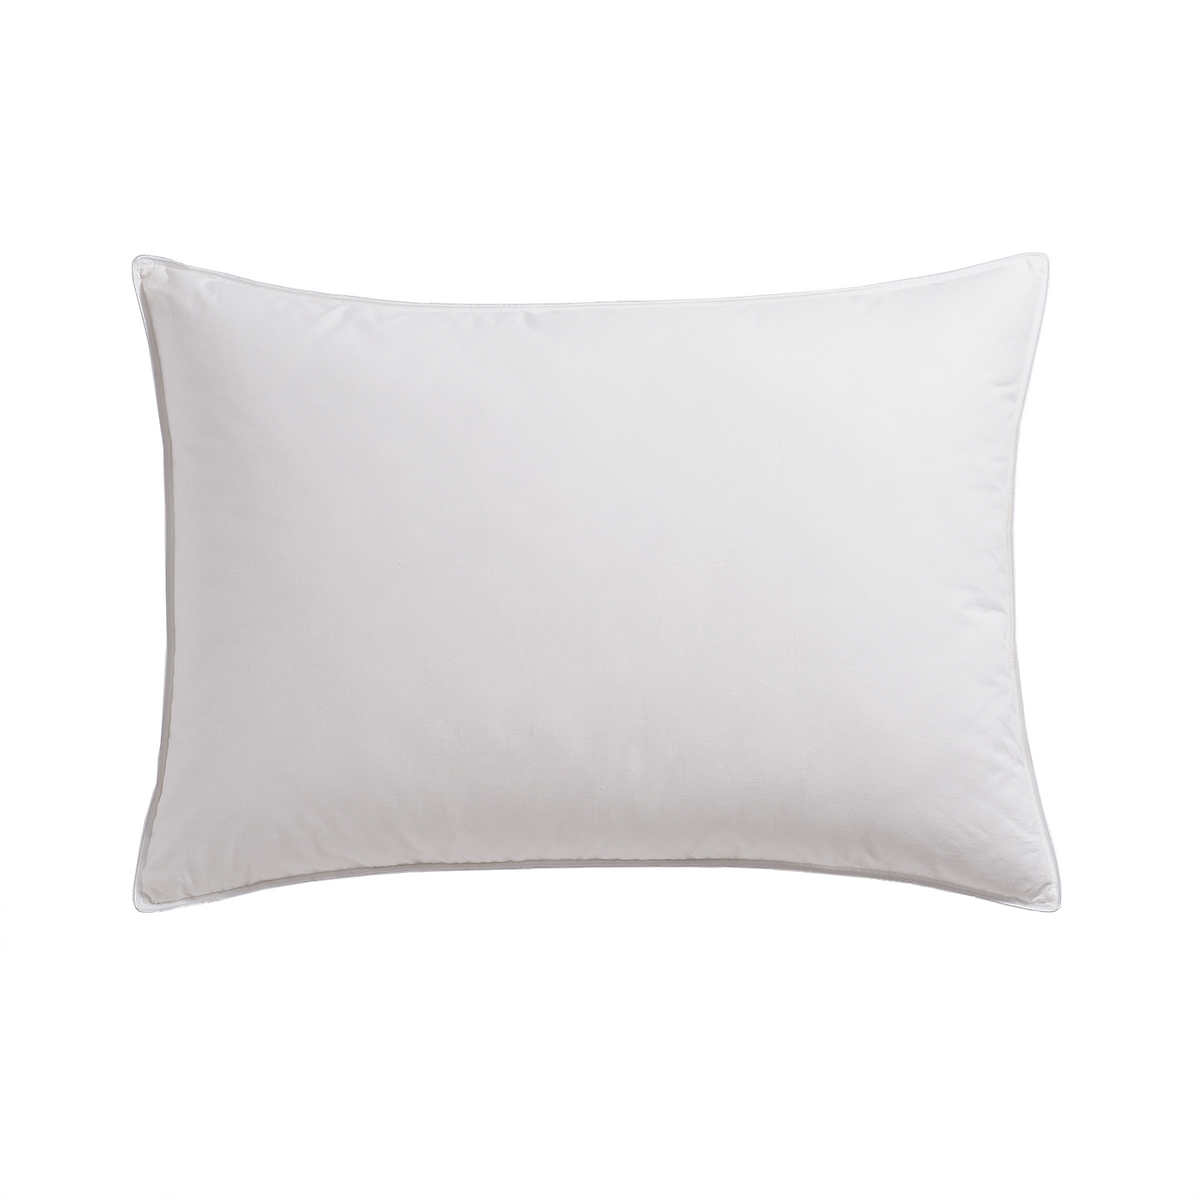 Whitex Feather Pillow King 20" x 36" 45 oz.